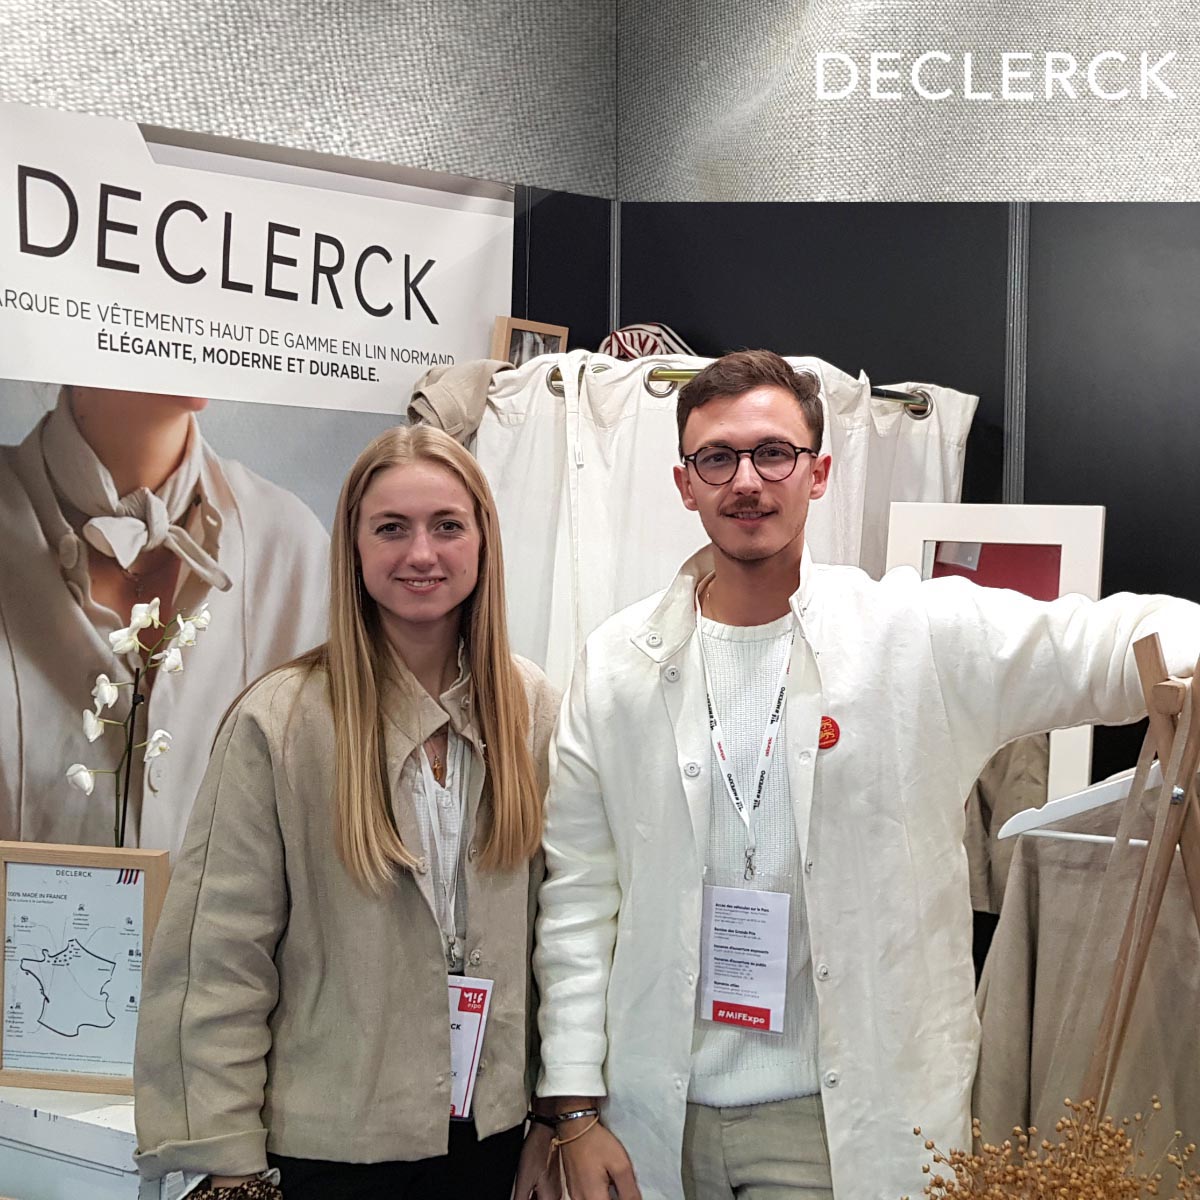 Declerck - vêtements en lin fabriqués en France